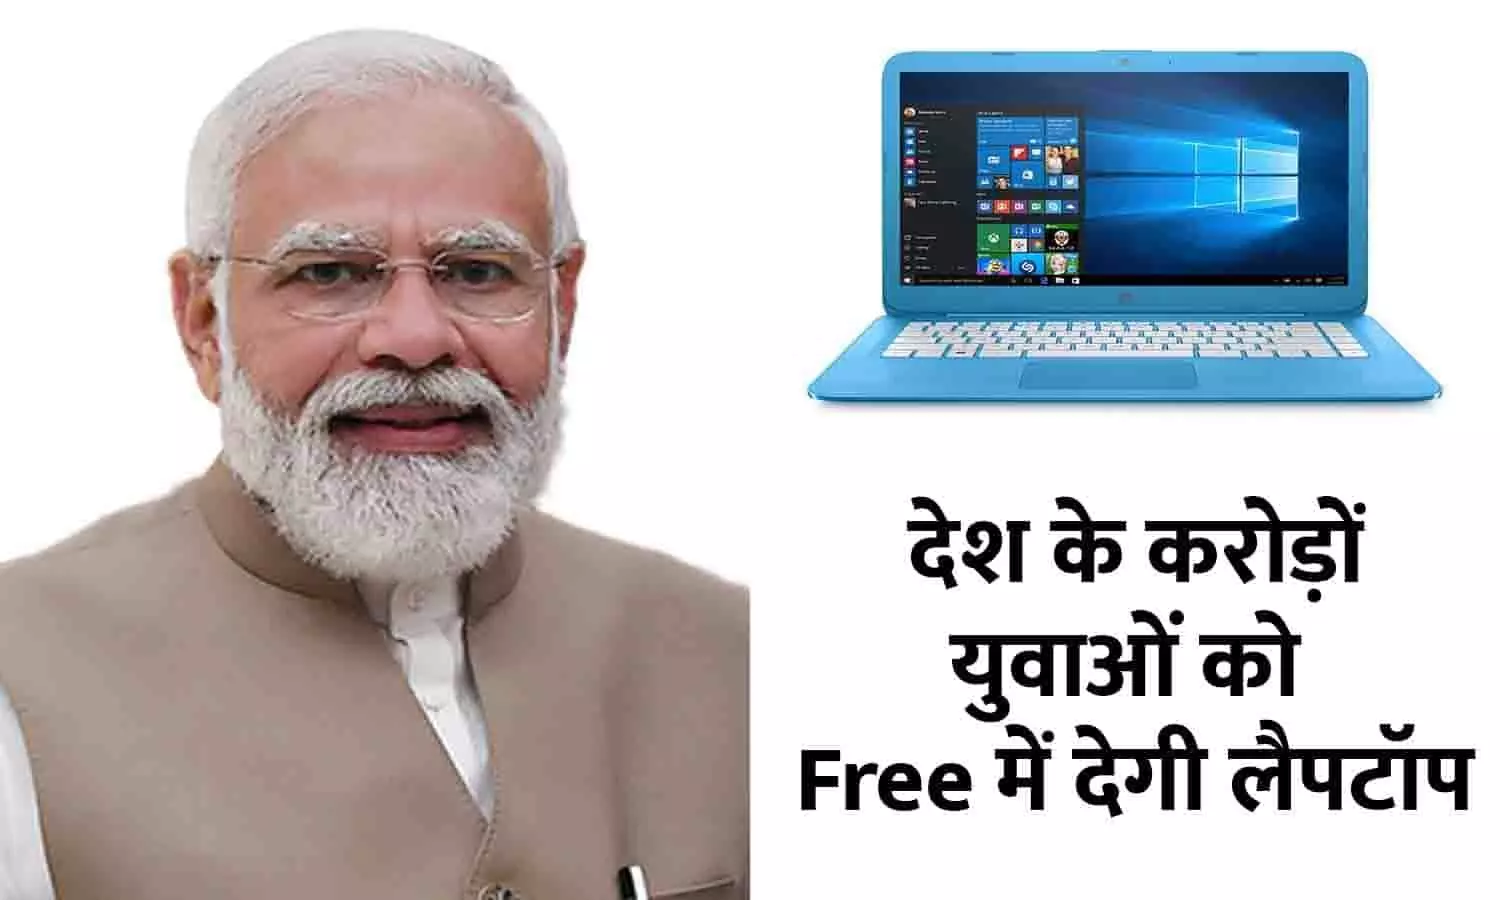 PM Free Laptop Scheme In Hindi 2023: गुड न्यूज़! देश के करोड़ों युवाओं को Free में देगी लैपटॉप, सरकार ने दी यह बड़ी जानकारी, ऐसे करे ऑनलाइन अप्लाई